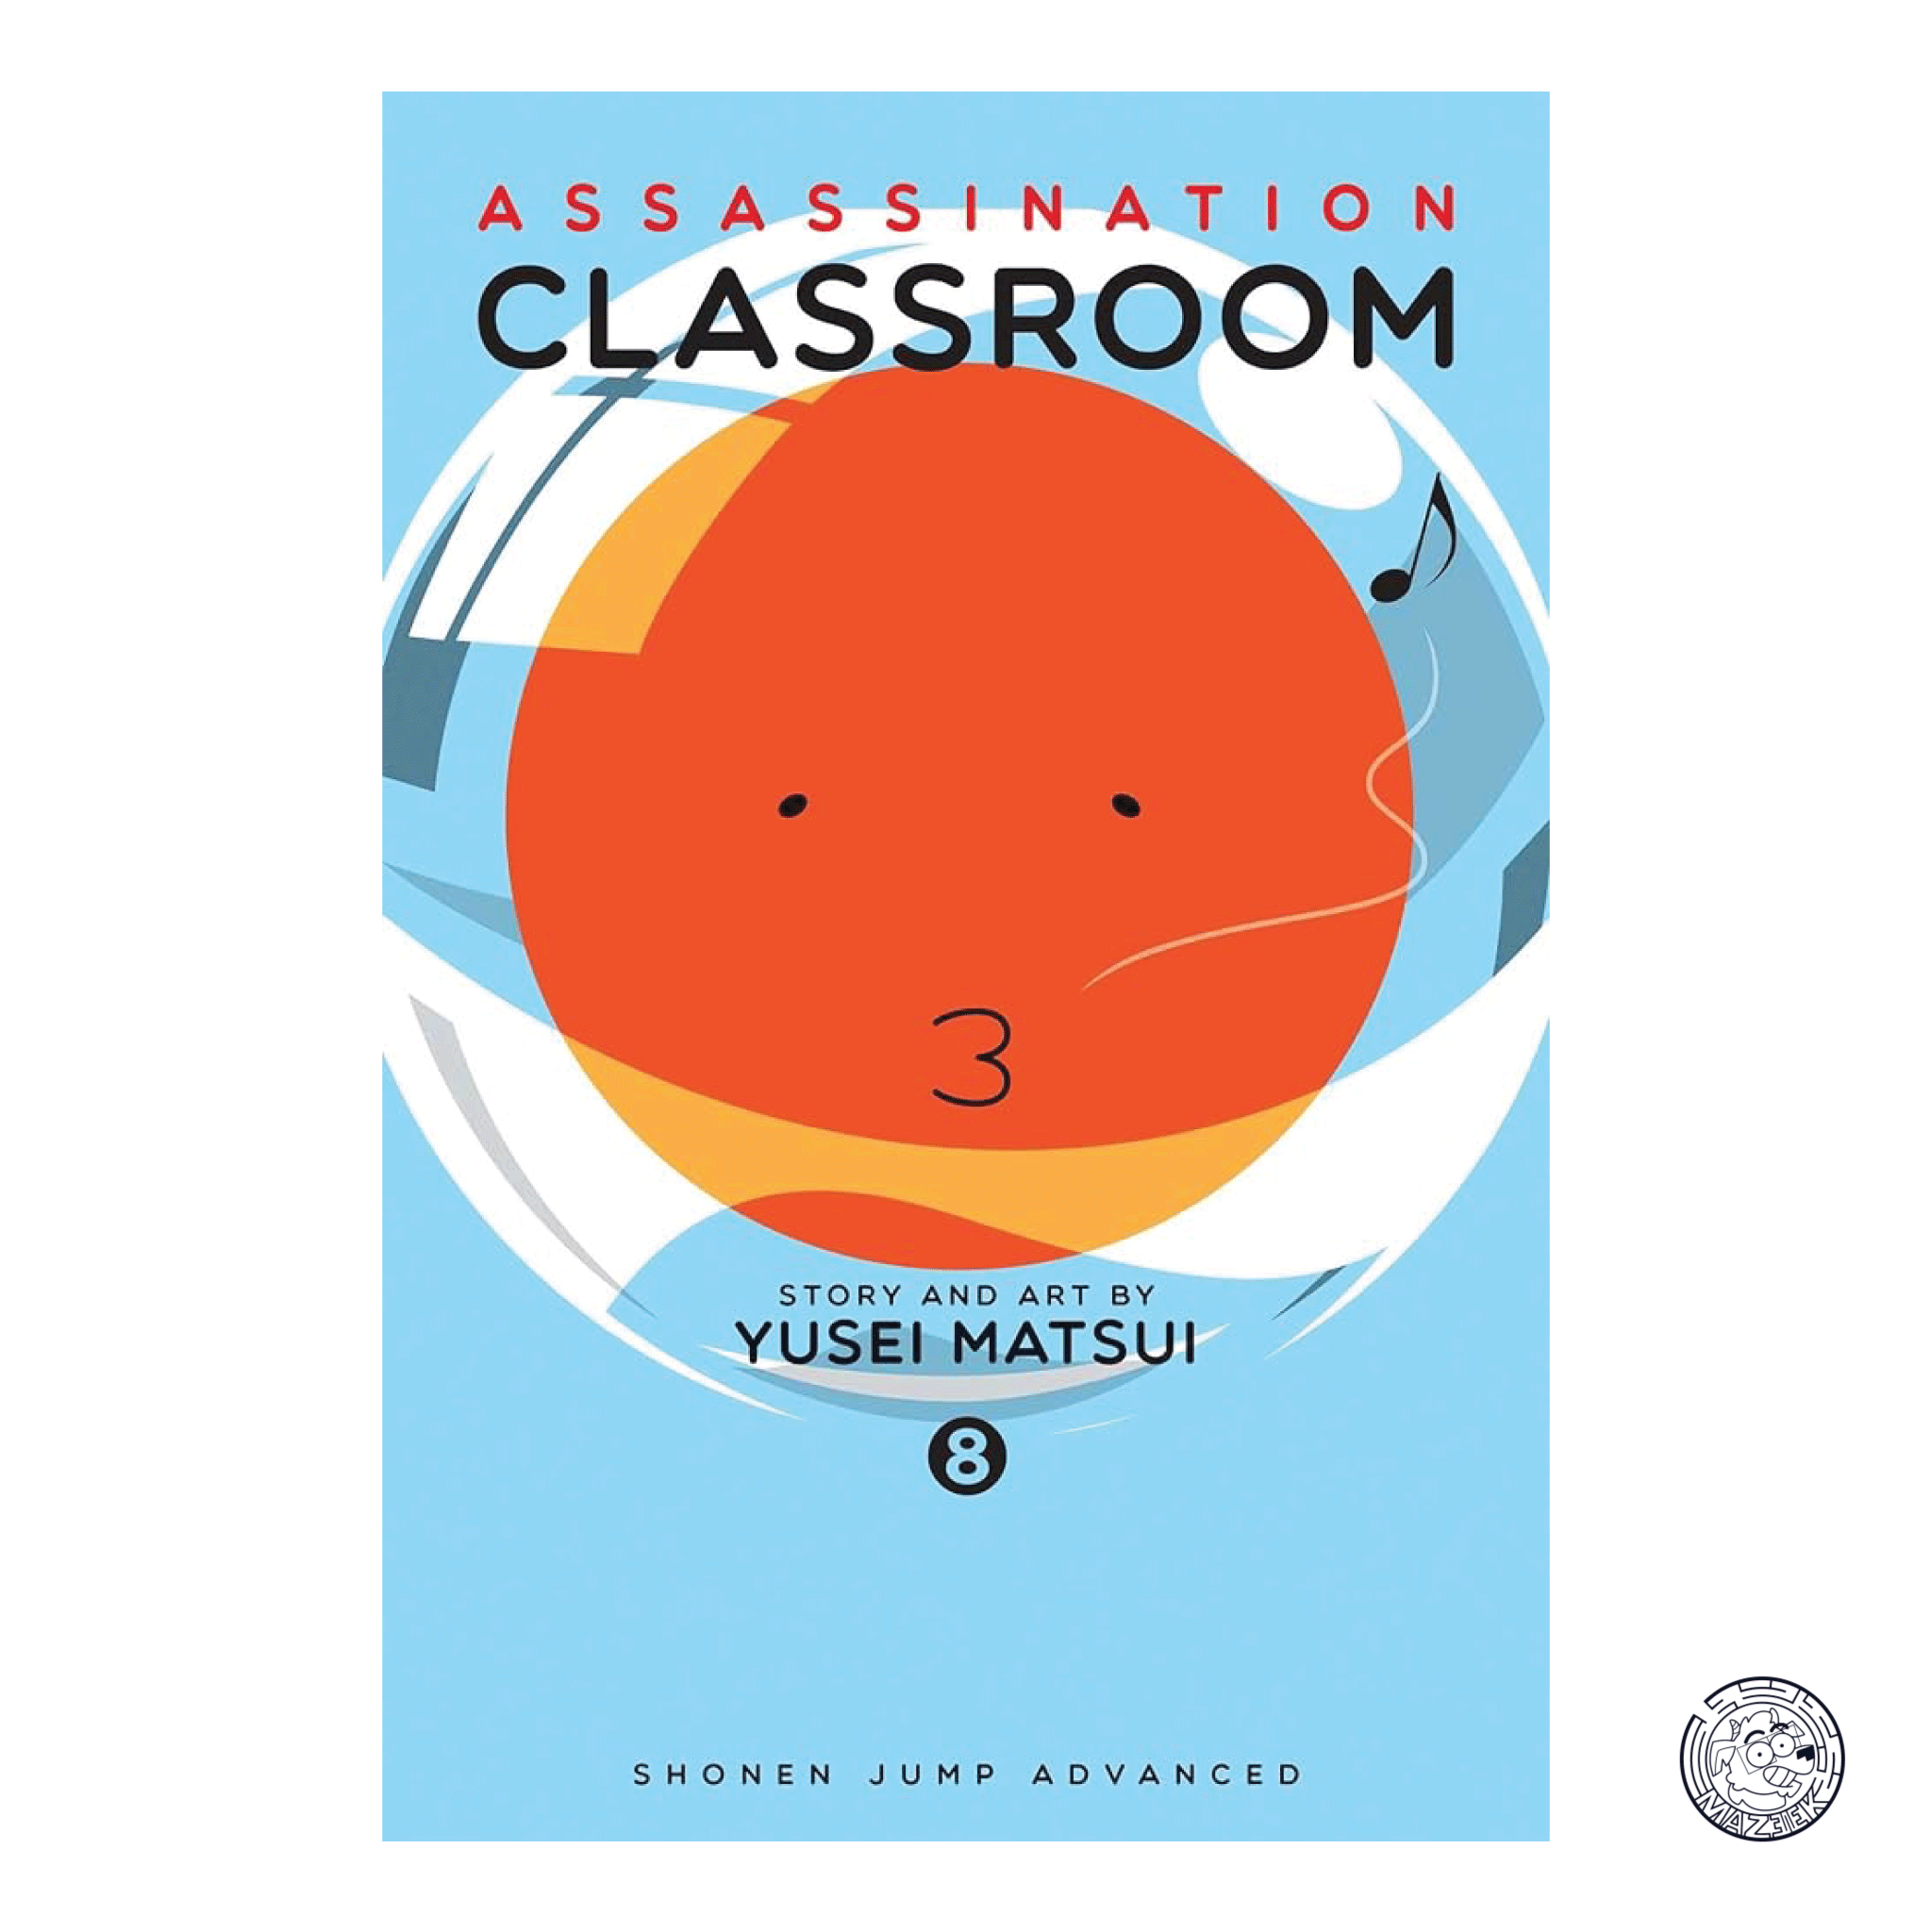 Assassination Classroom 08 - Reprint 1